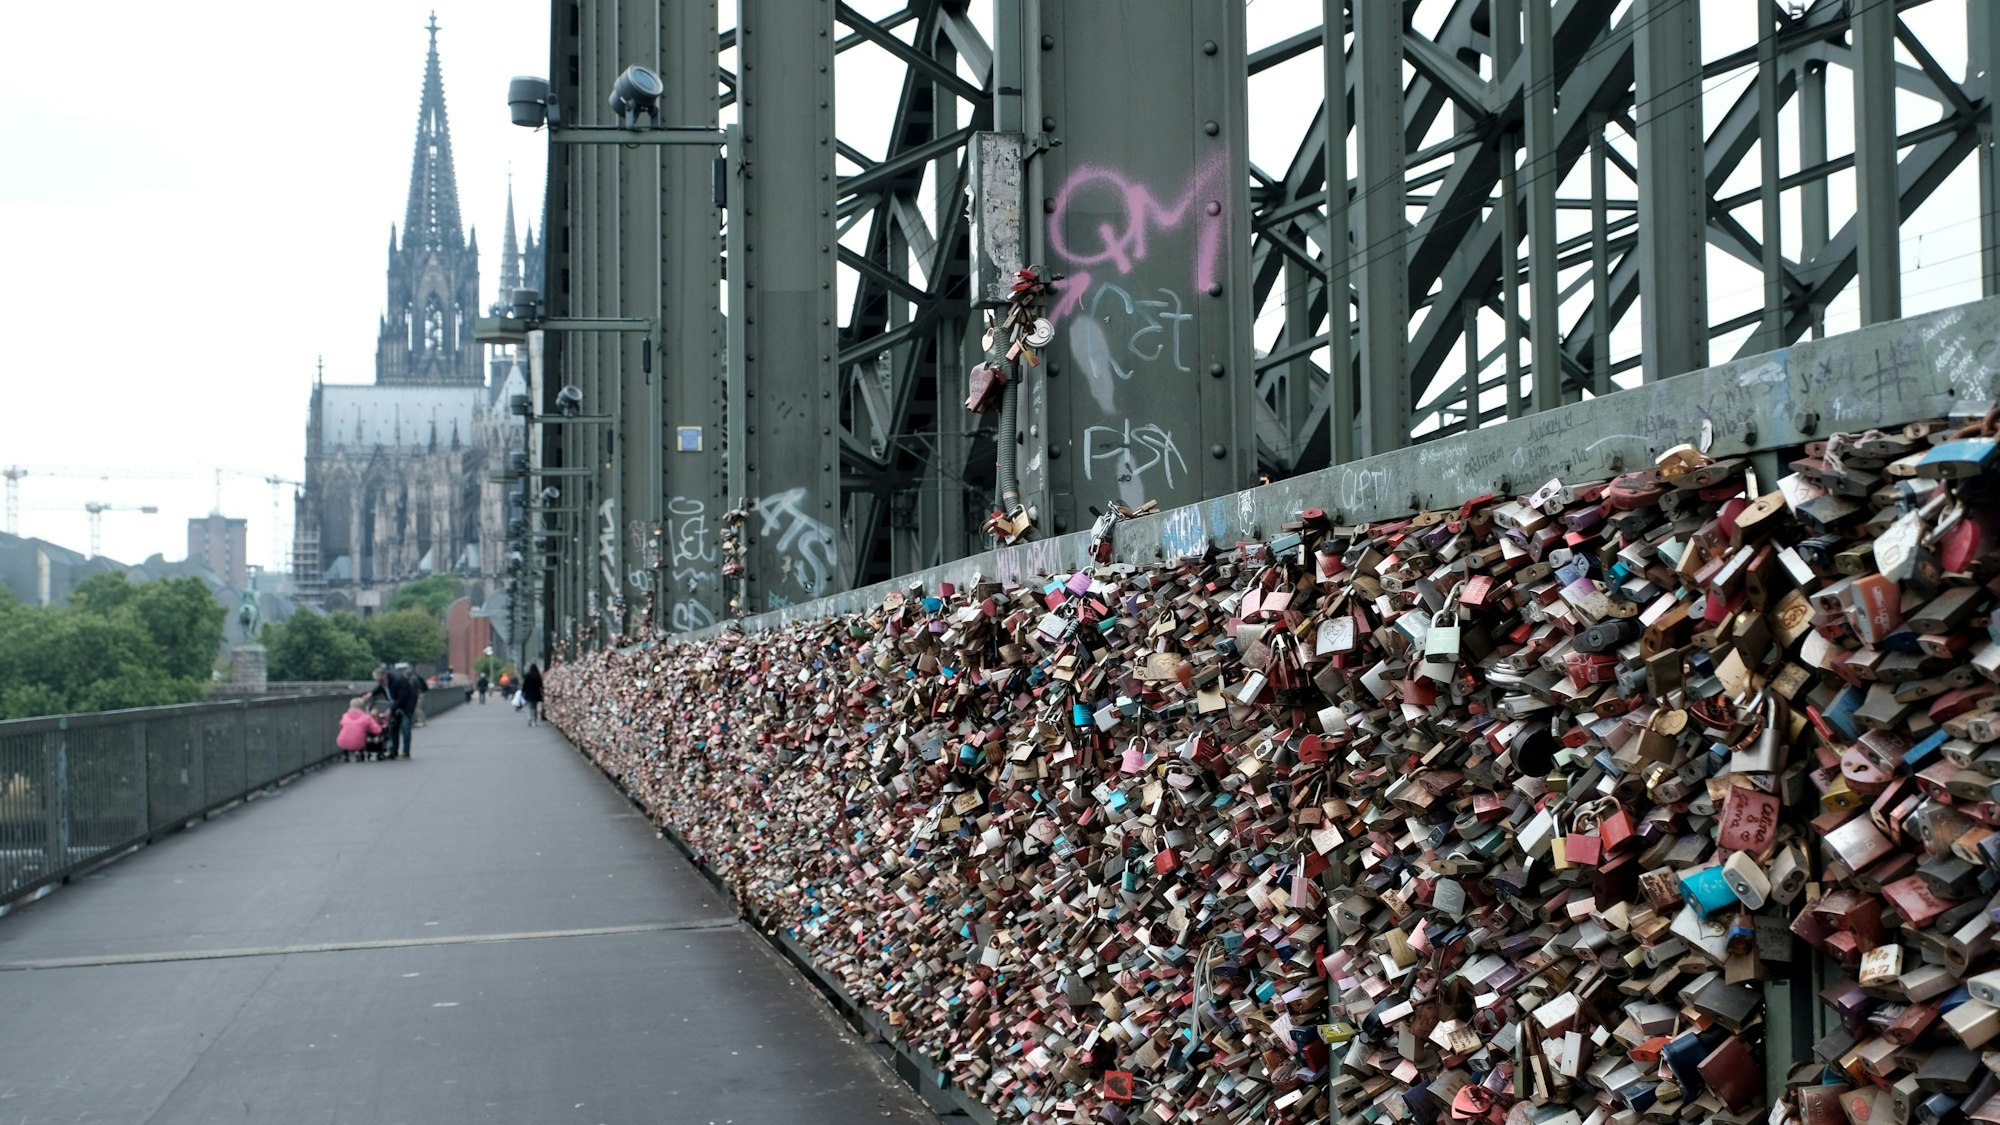 Liebesschlösser hängen an der Hohenzollernbrücke in Köln.